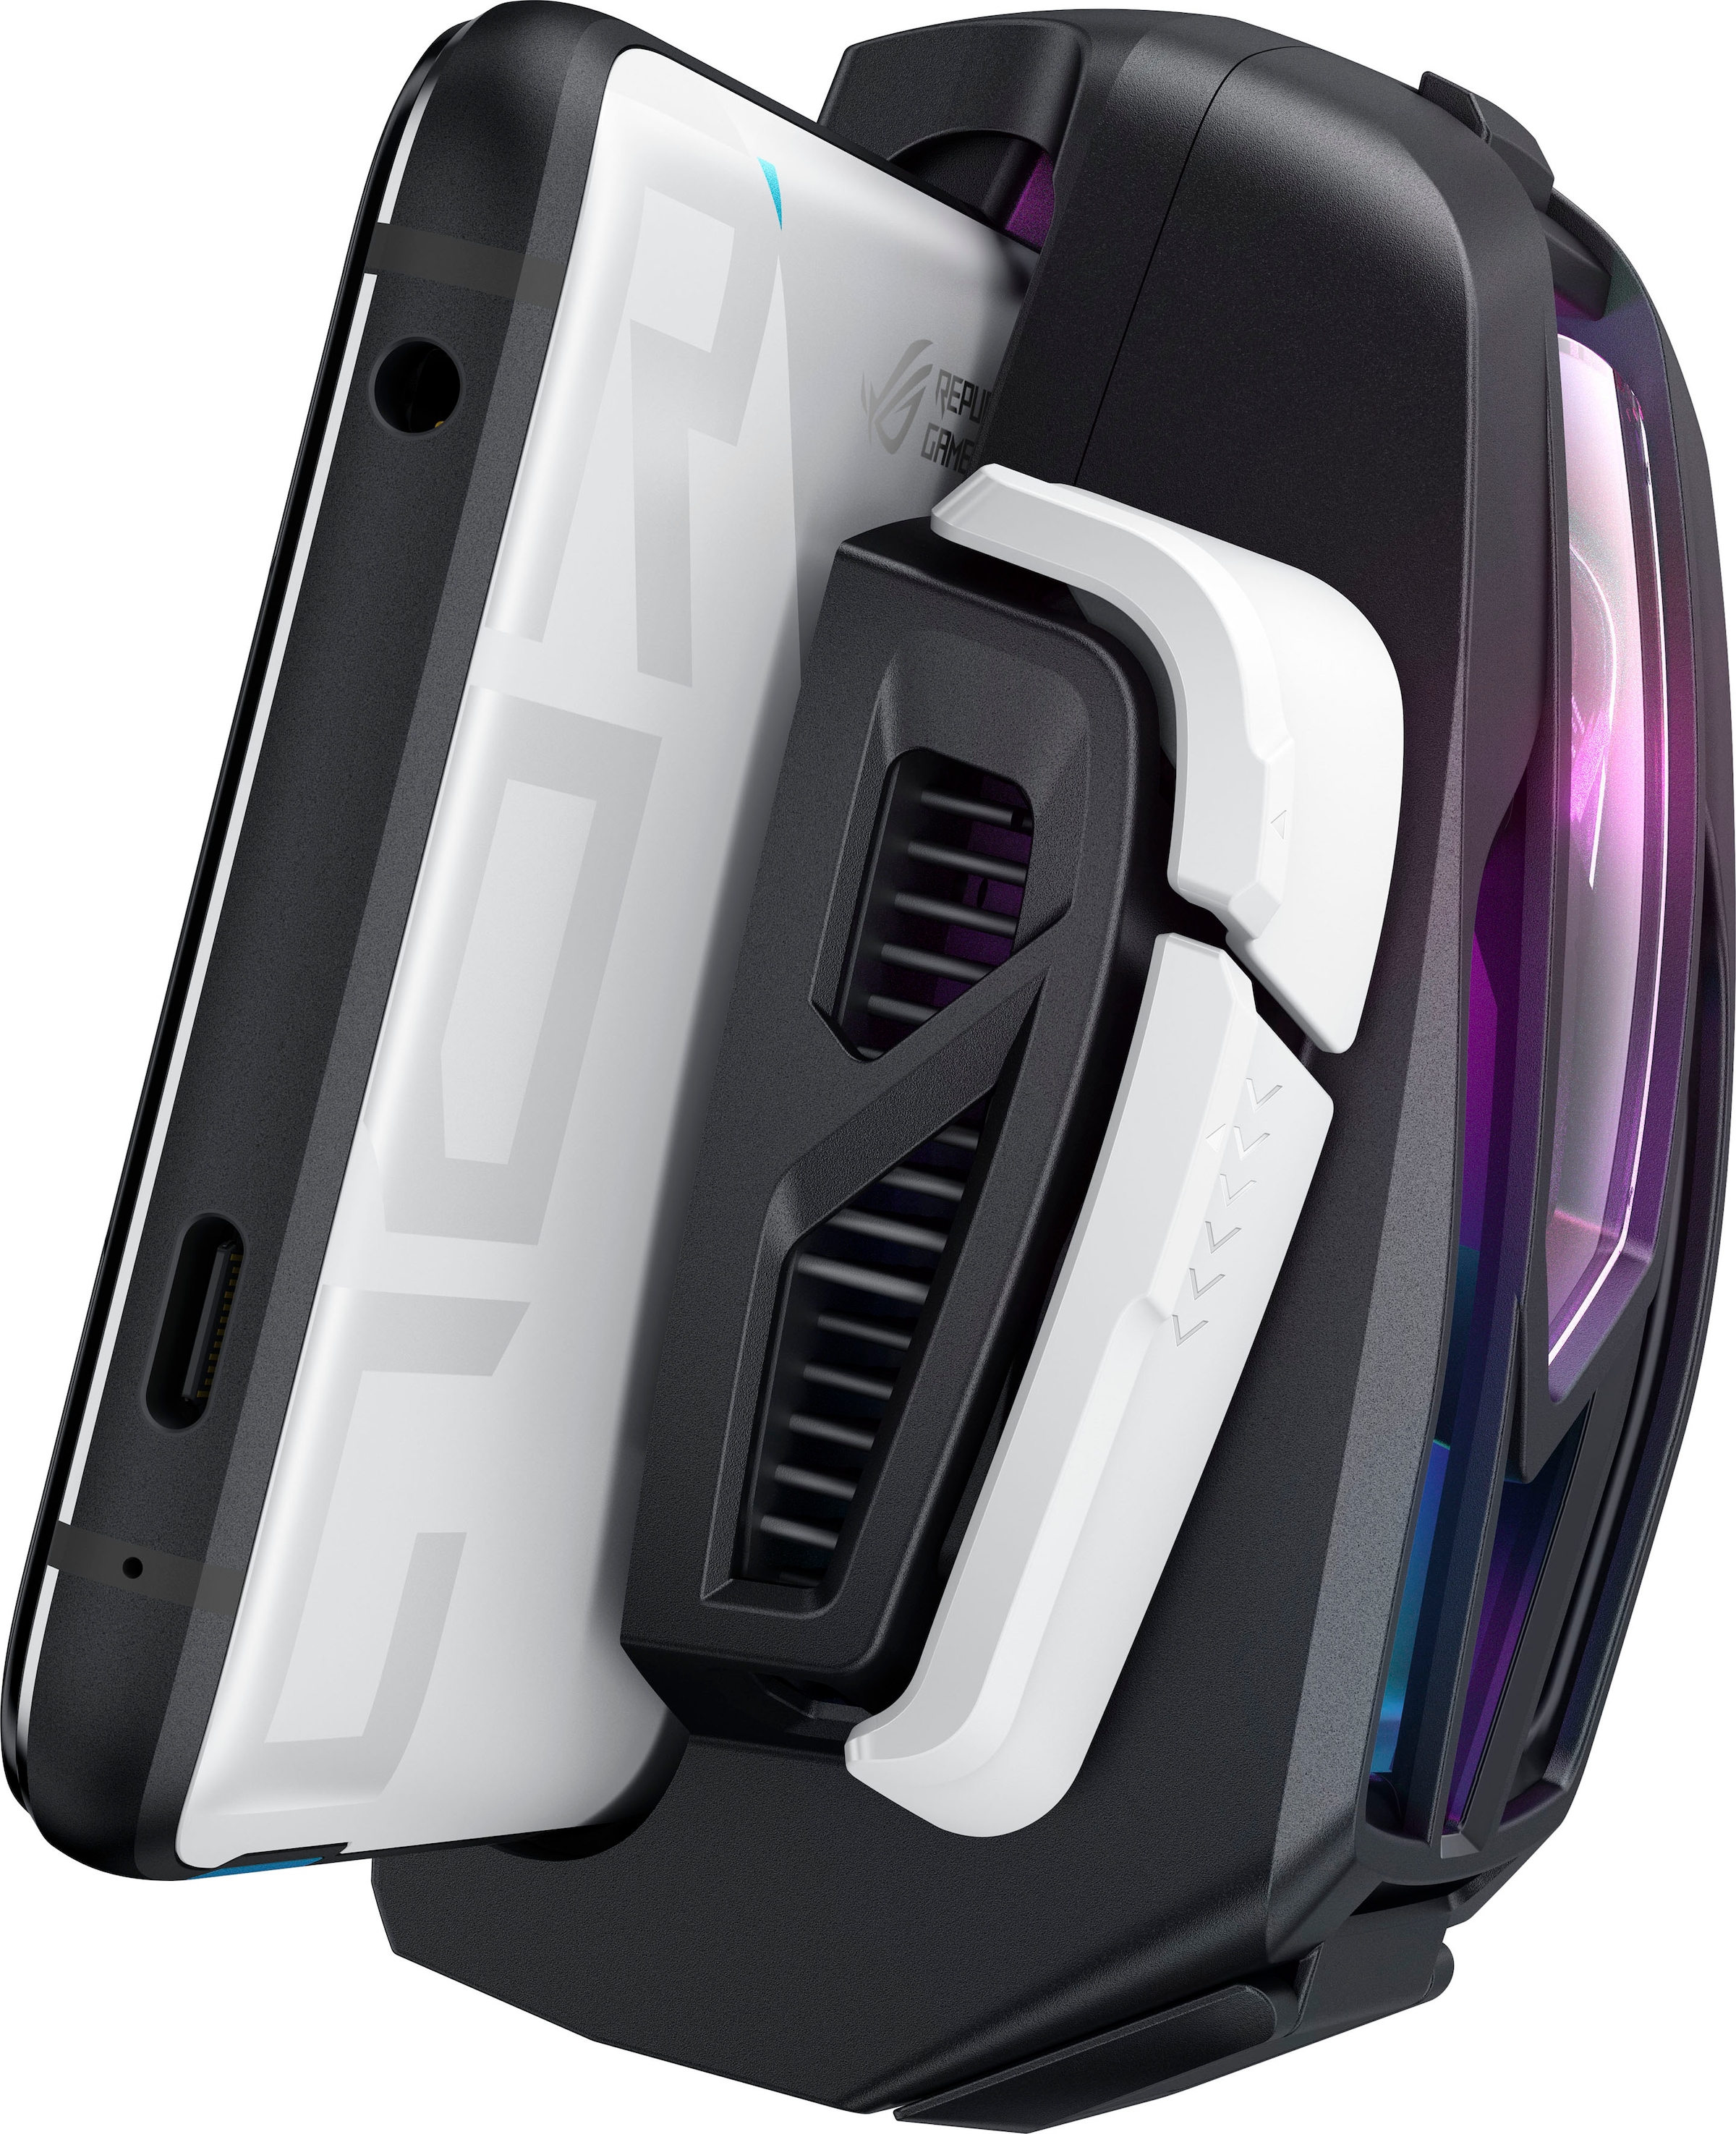 Asus Smartphone »ROG Phone 7 Ultimate«, Storm White, 17,22 cm/6,78 Zoll, 512  GB Speicherplatz, 50 MP Kamera auf Rechnung kaufen